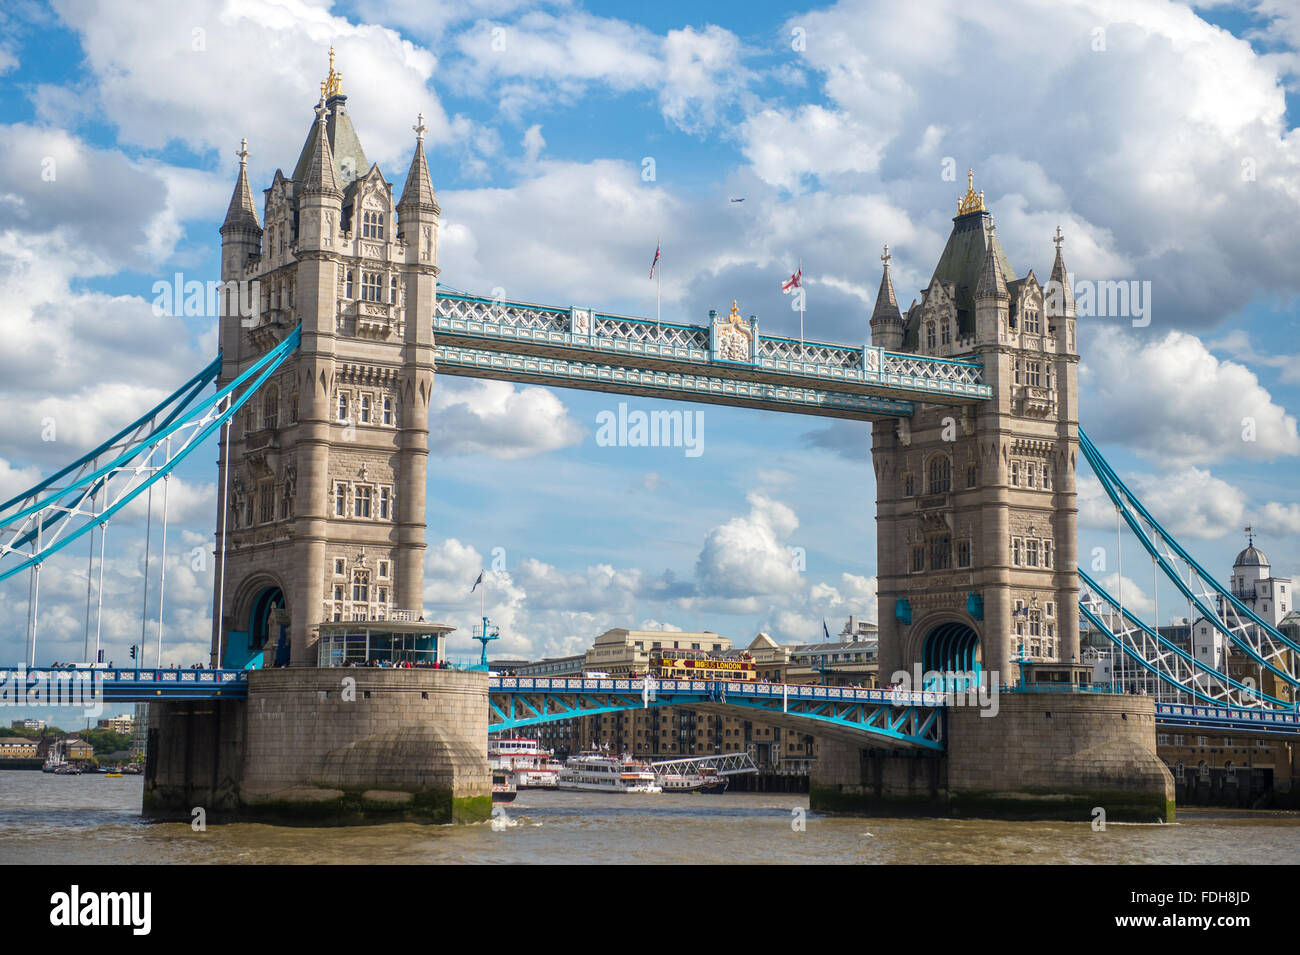 Le Tower Bridge sur la Tamise à Londres, en Angleterre. Banque D'Images